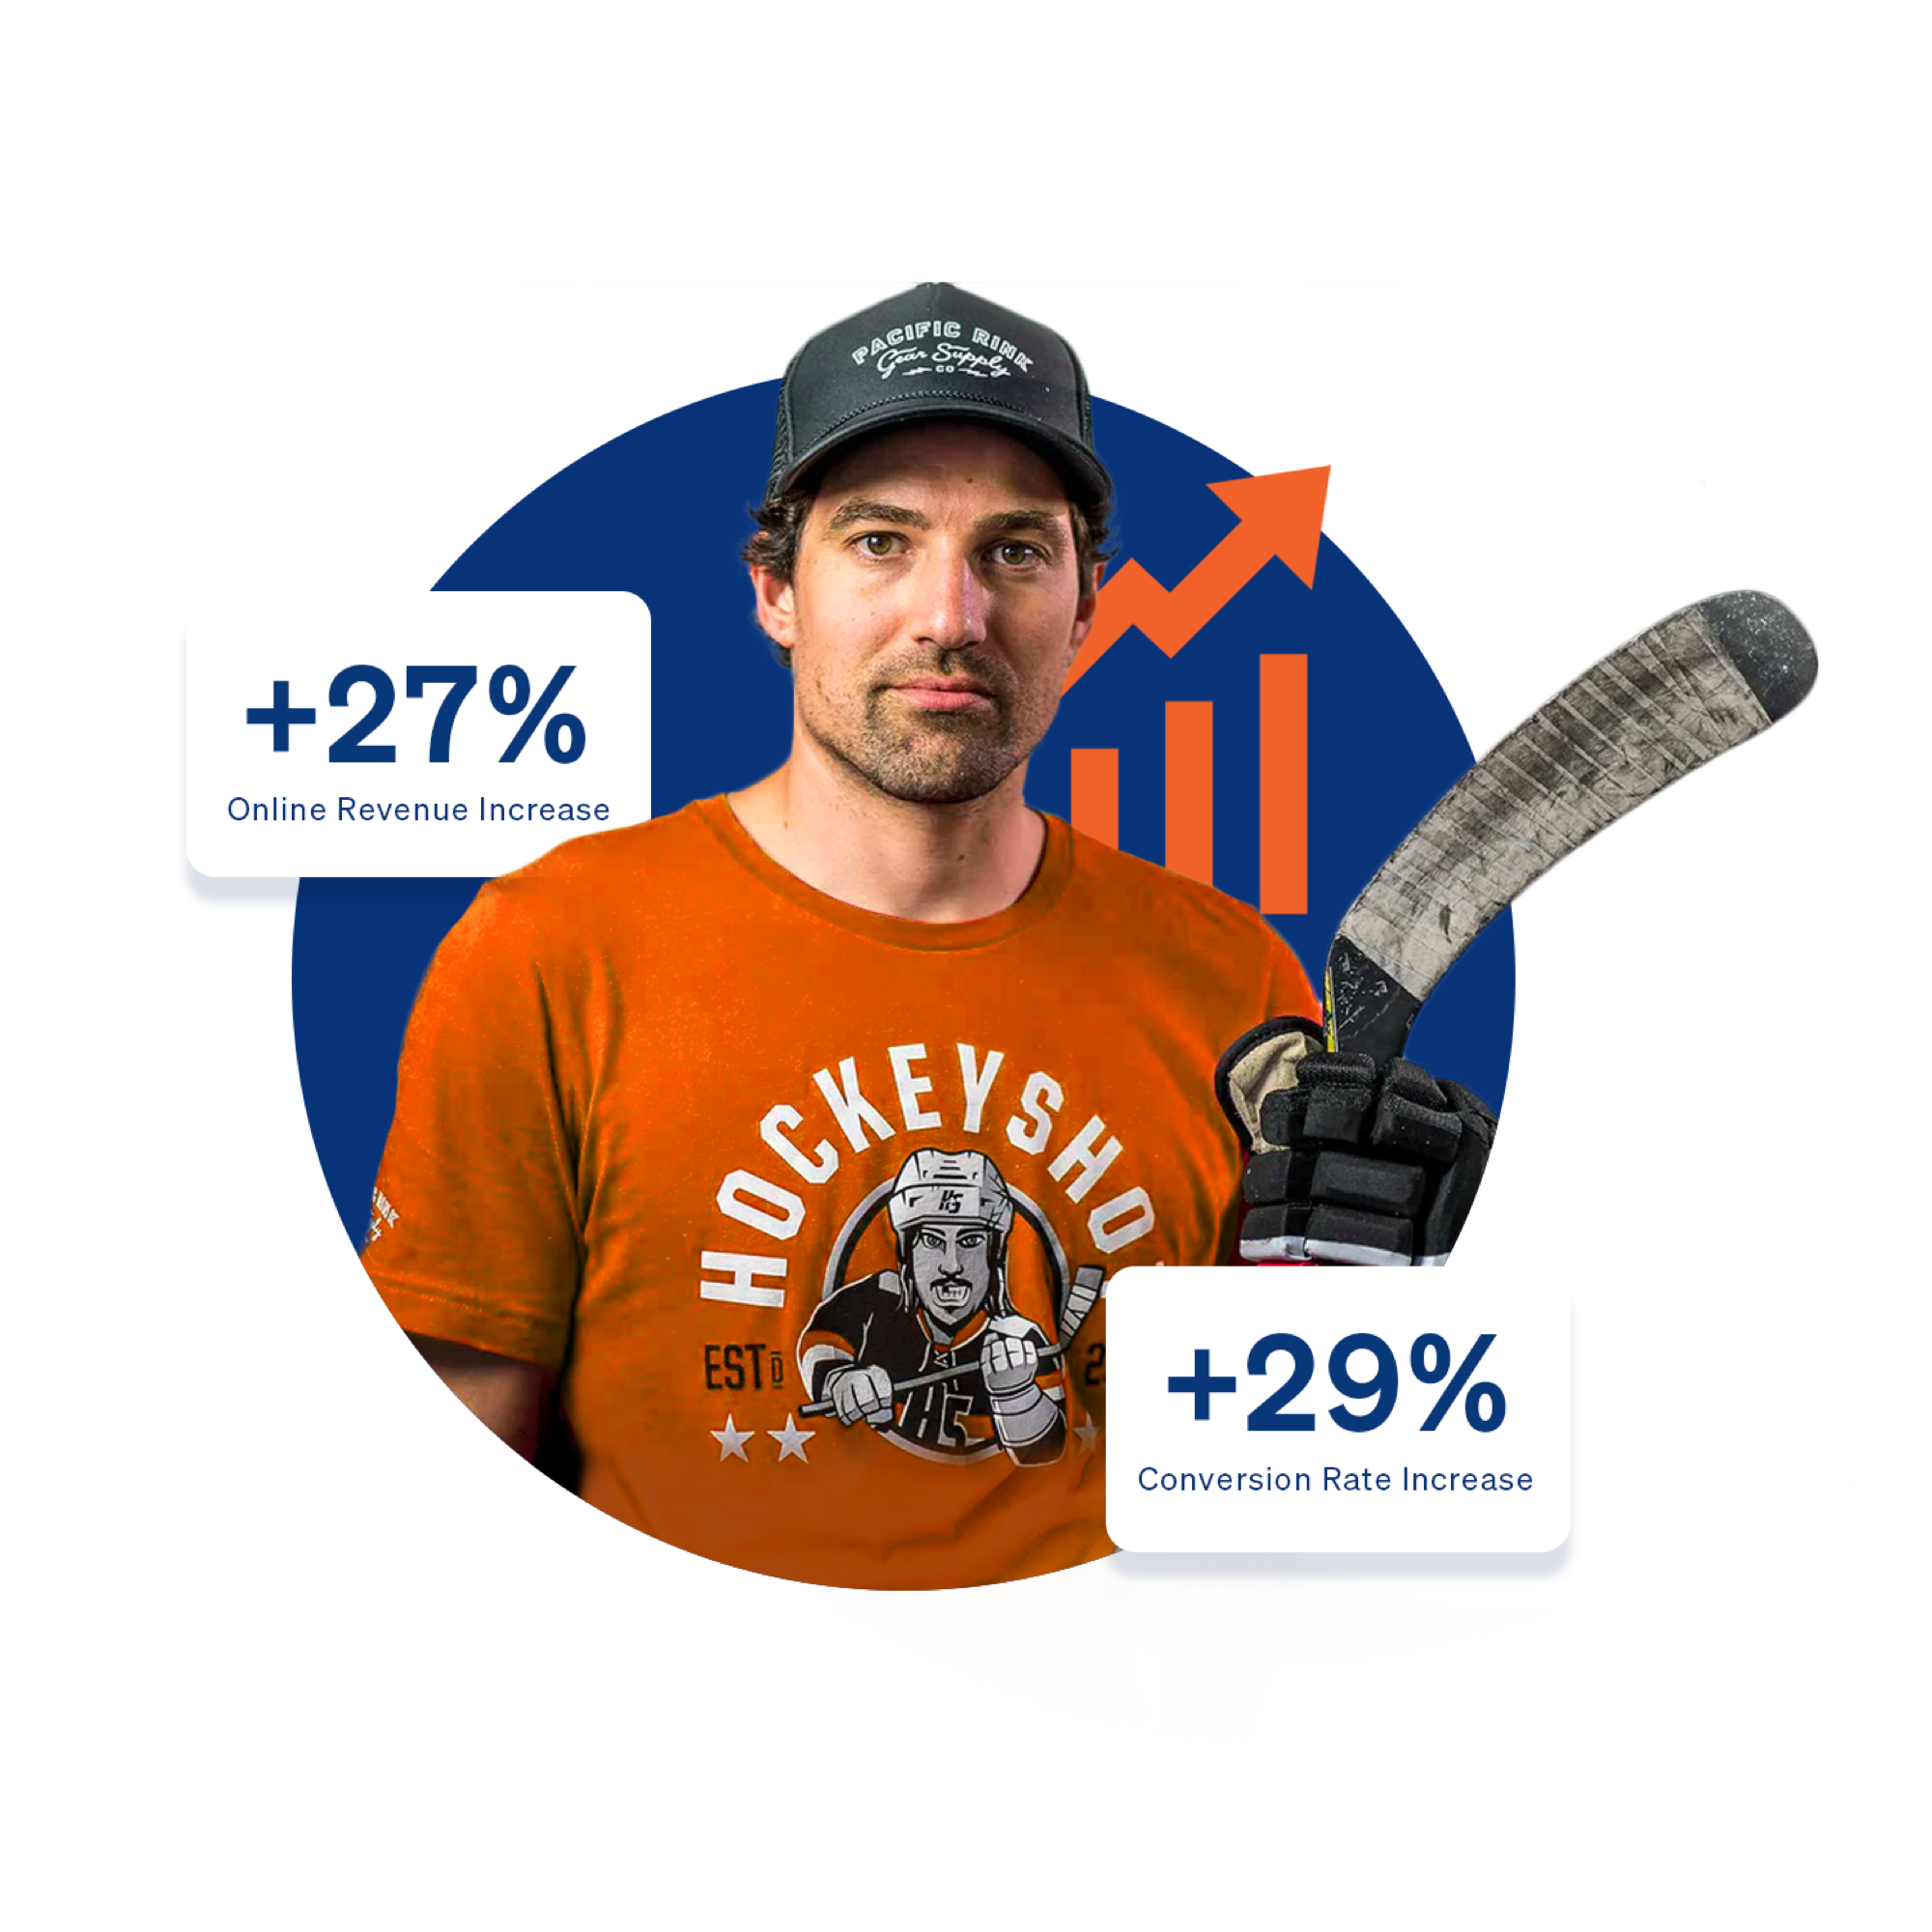 Hockeyshot graphic with man